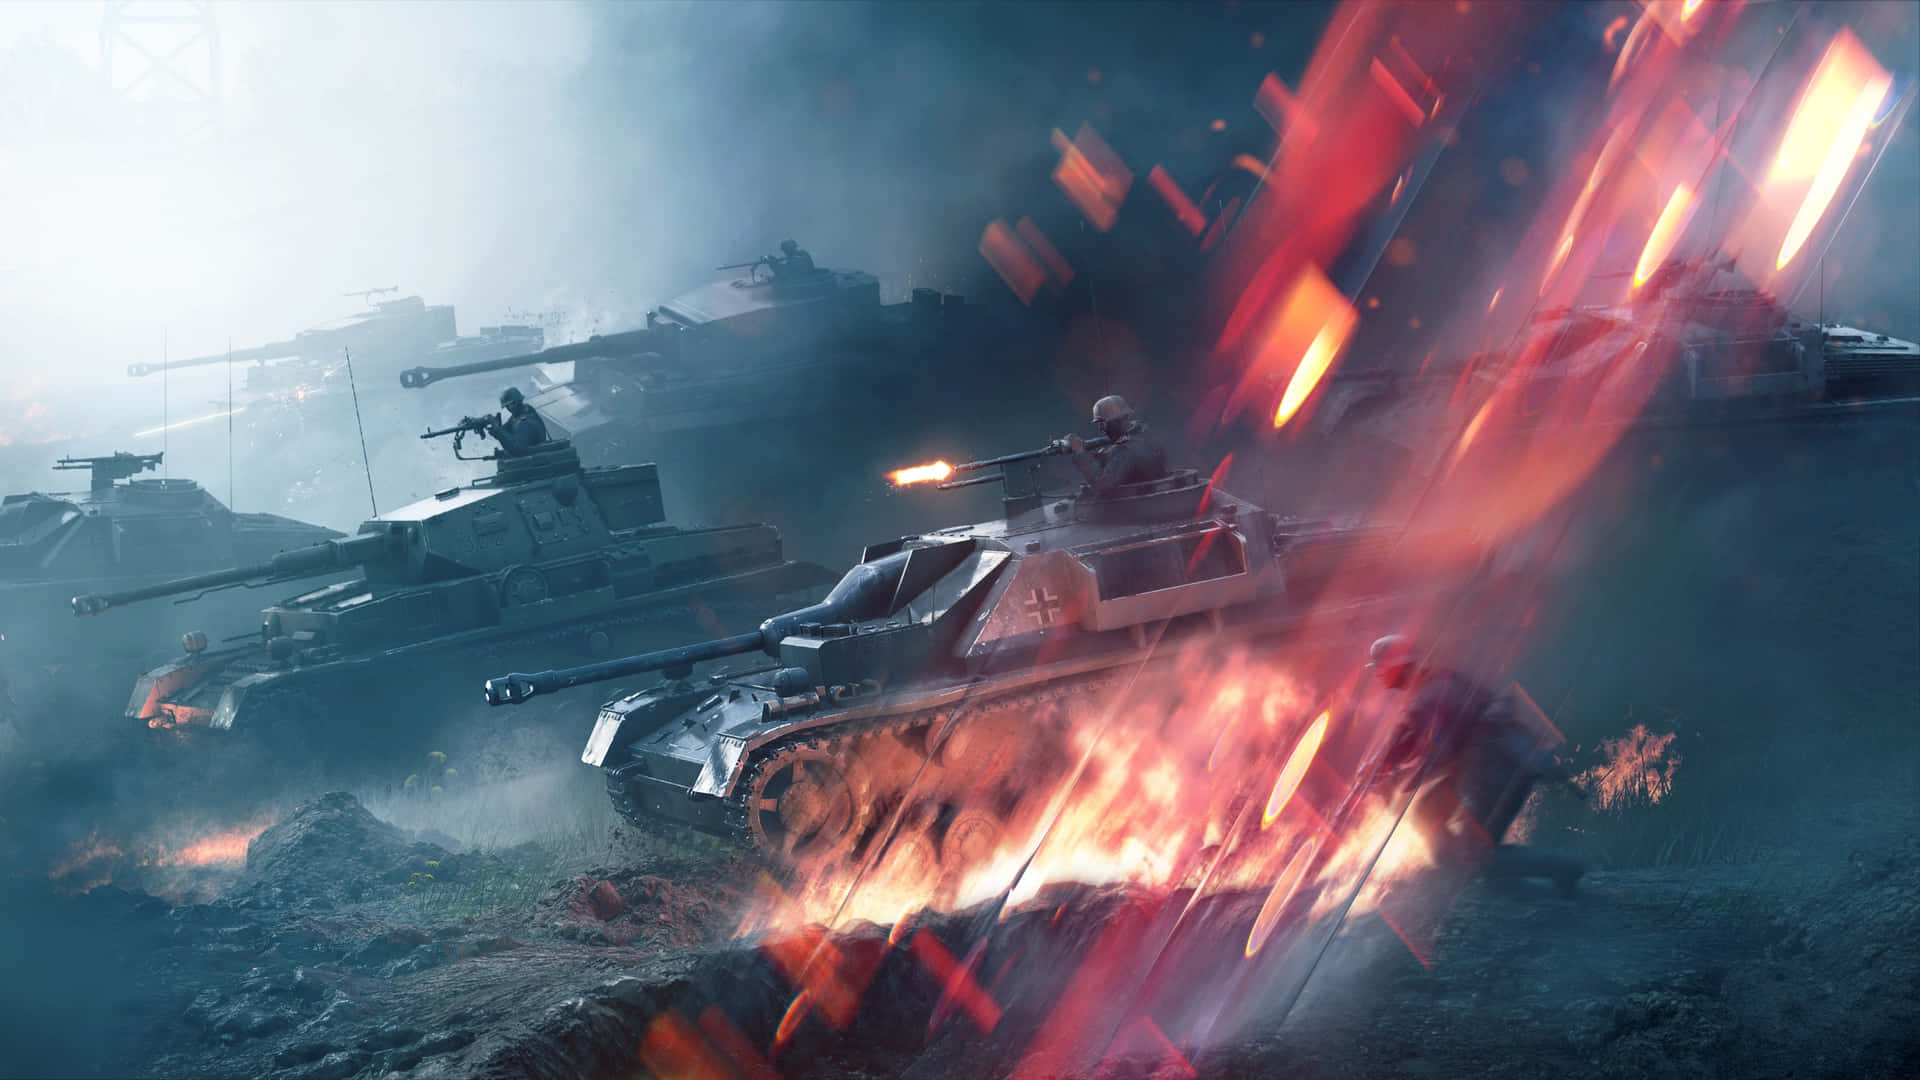 Battlefield Vehicles in Action Wallpaper